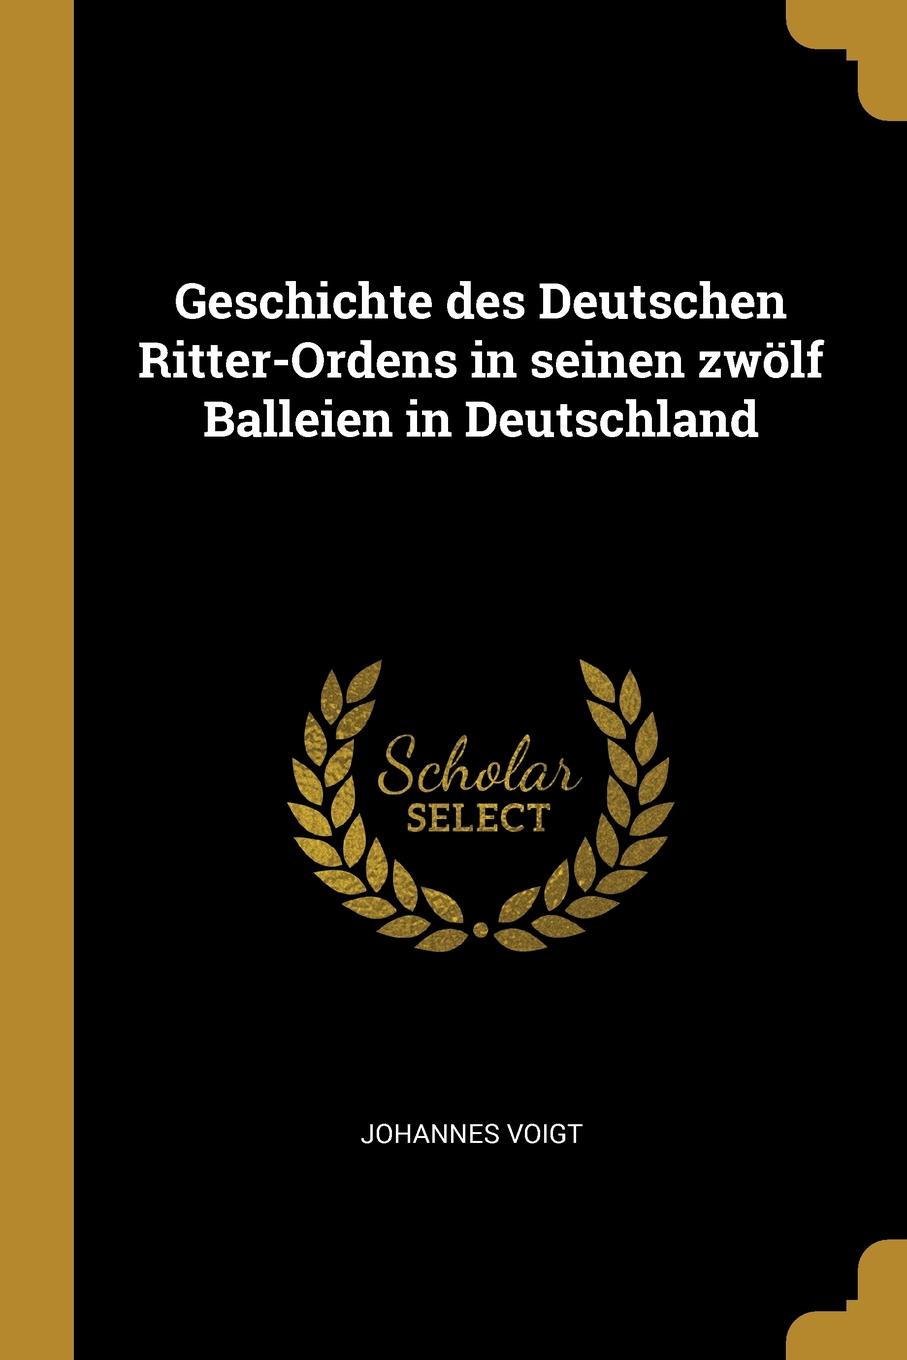 Geschichte des Deutschen Ritter-Ordens in seinen zwolf Balleien in Deutschland